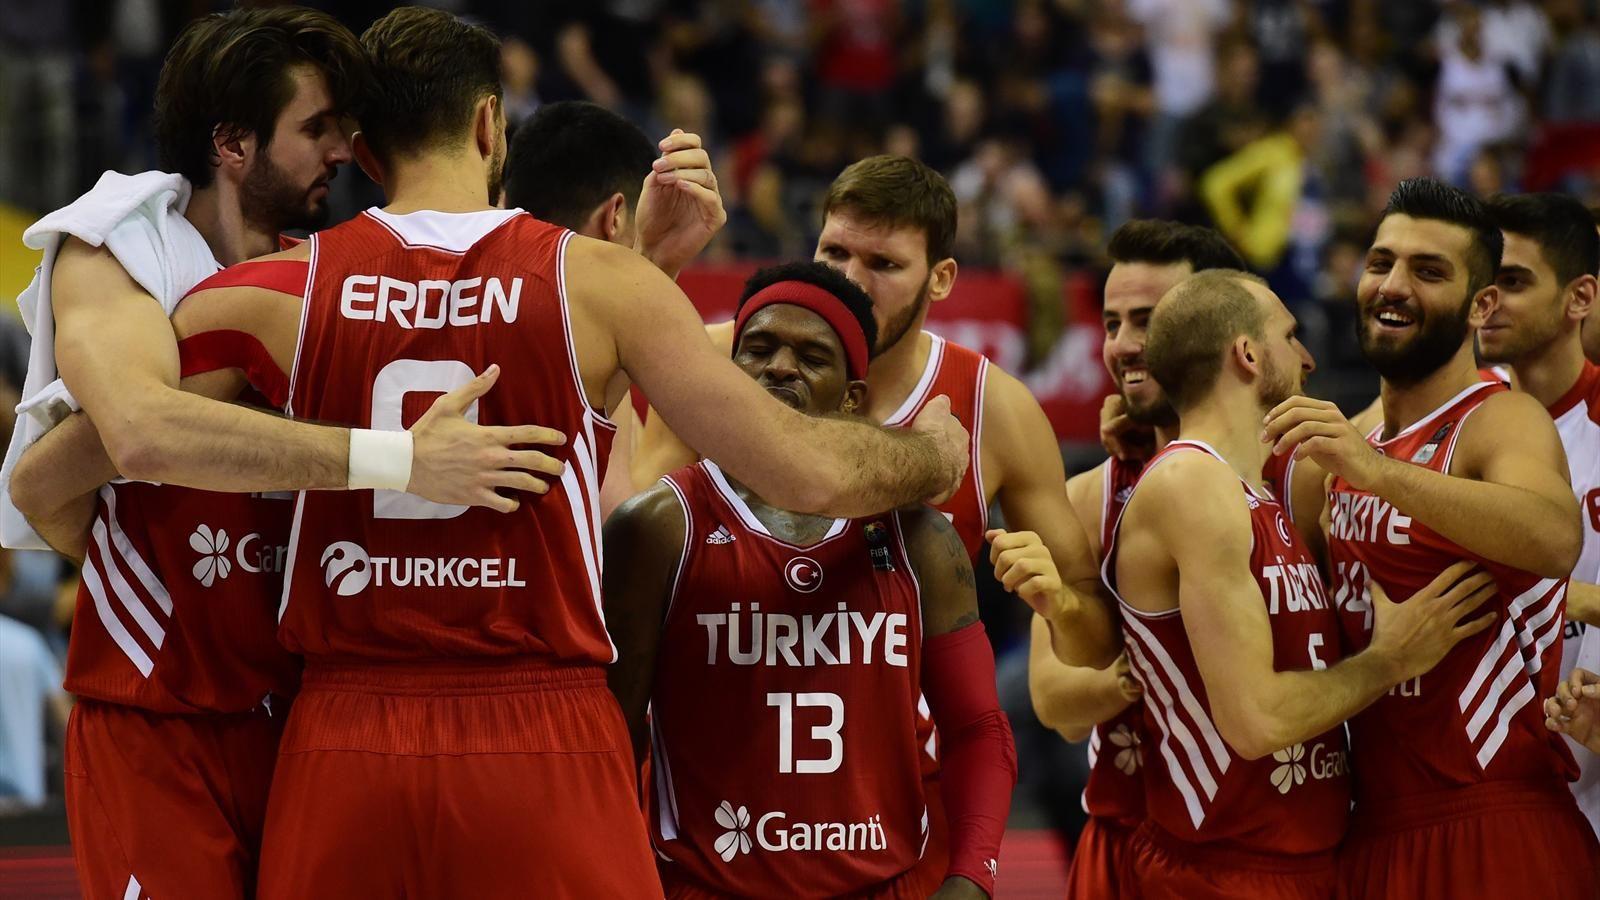 Турция баскетбол мужчины. Сборная Турции по баскетболу. Баскетболисты Турции. Мужская сборная Турции по баскетболу. Сборная Турции по баскетболу мужчины плачут.